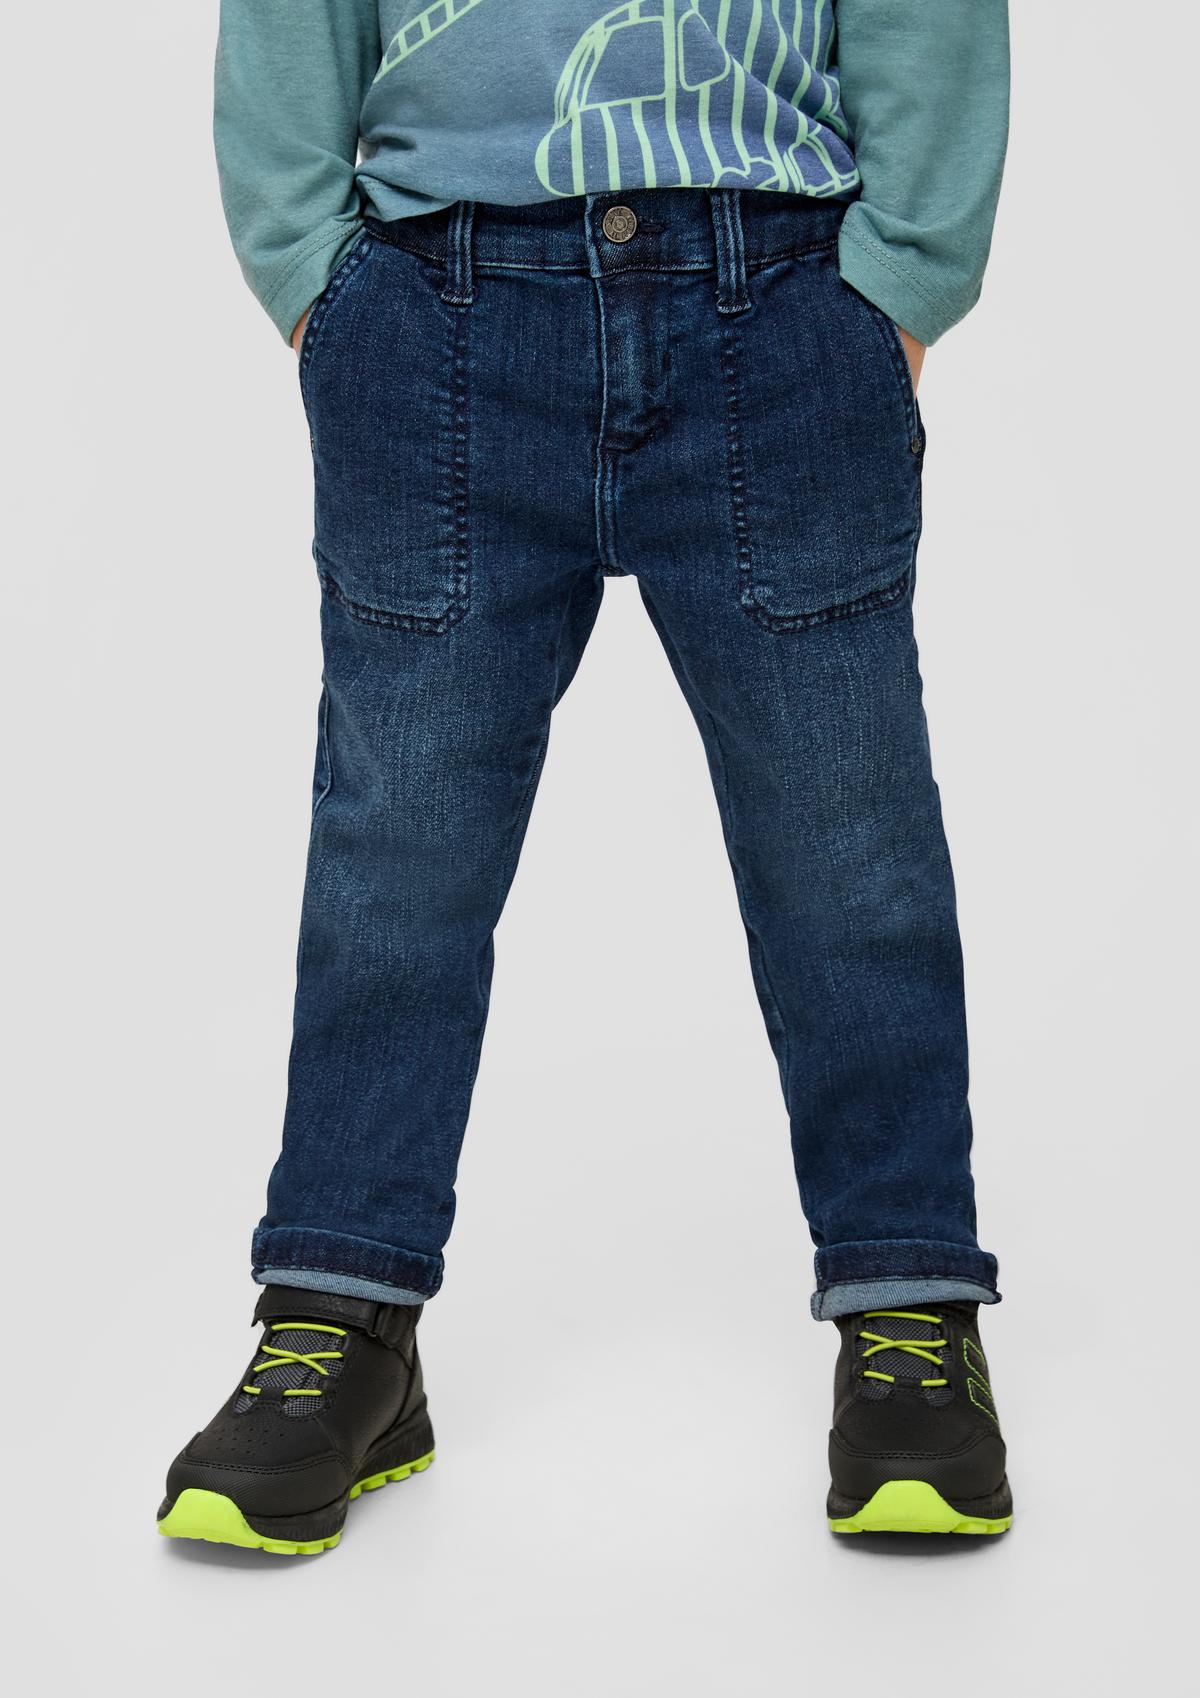 Pelle: Jeans mit verstellbarem Bund